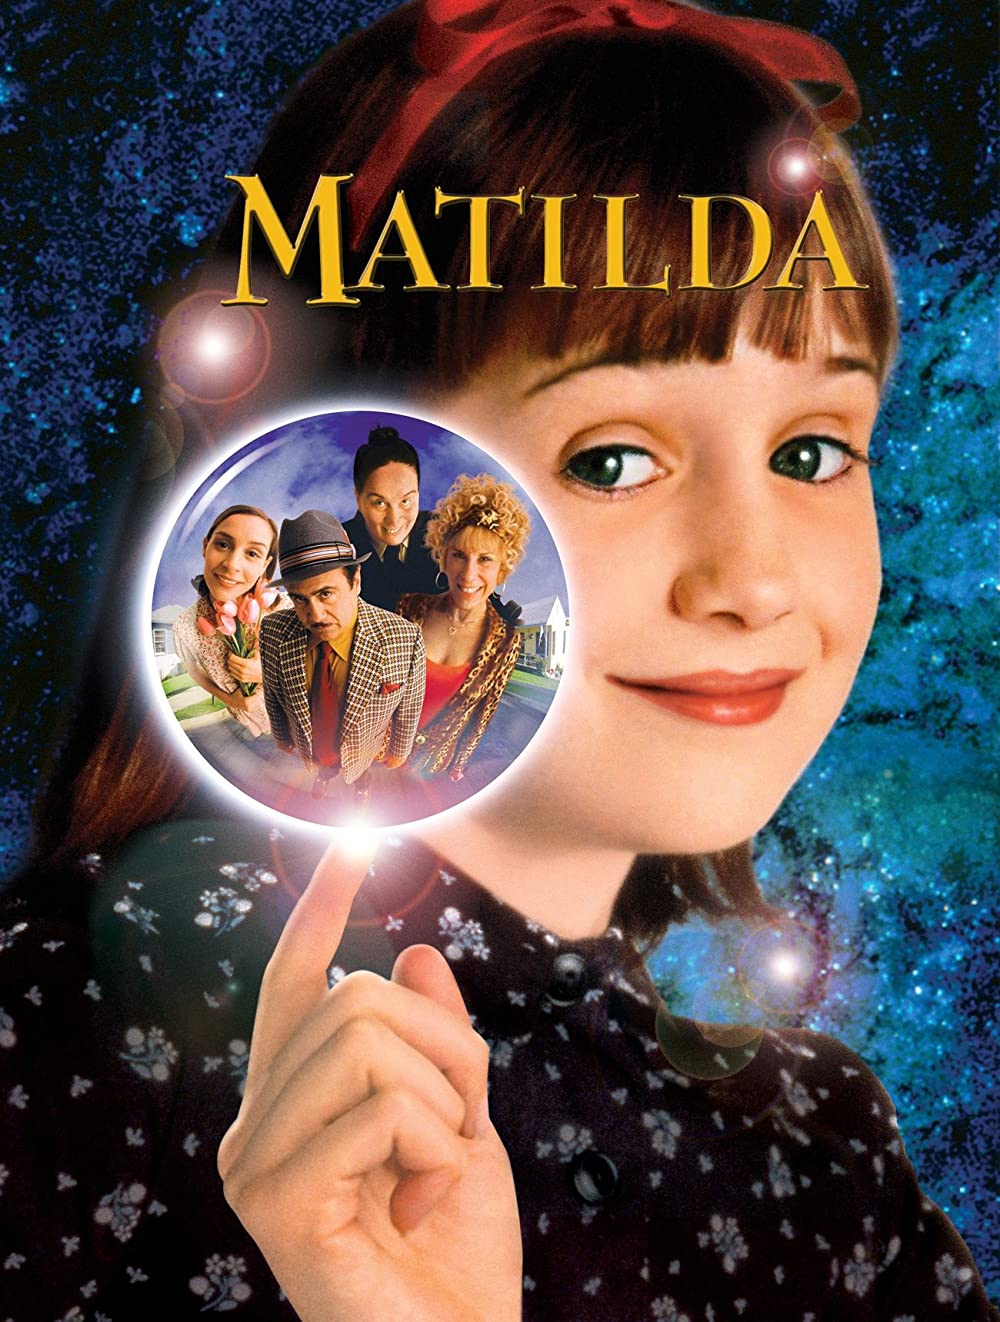 The Cast of Matilda